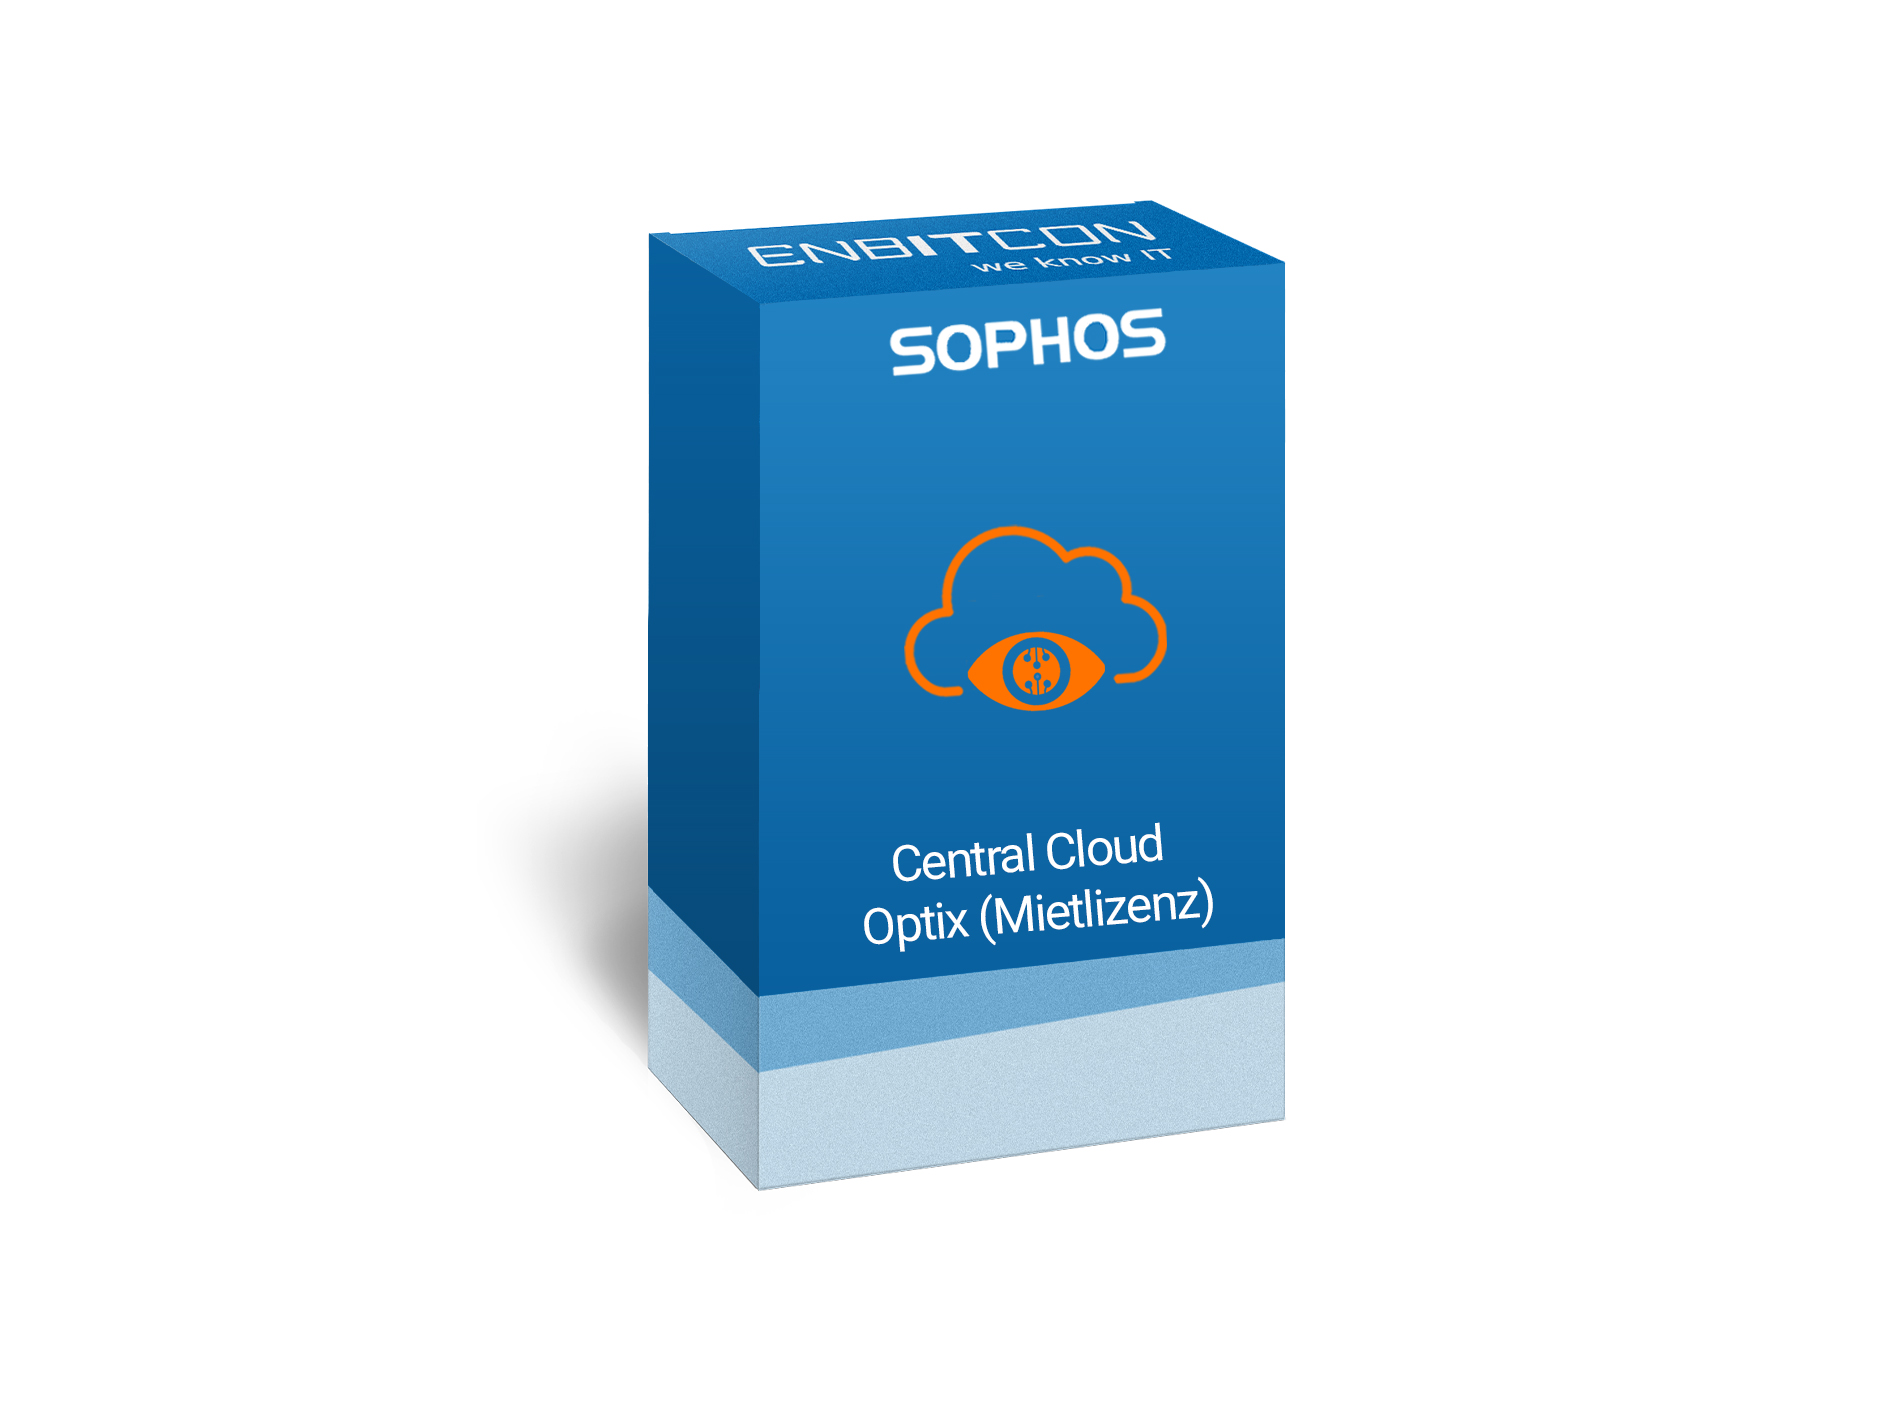 Sophos Central Cloud Optix Mietlizenz Vorschaubild bestehend aus einem blauen Schild, indem sich eine blaue Wolke befindet